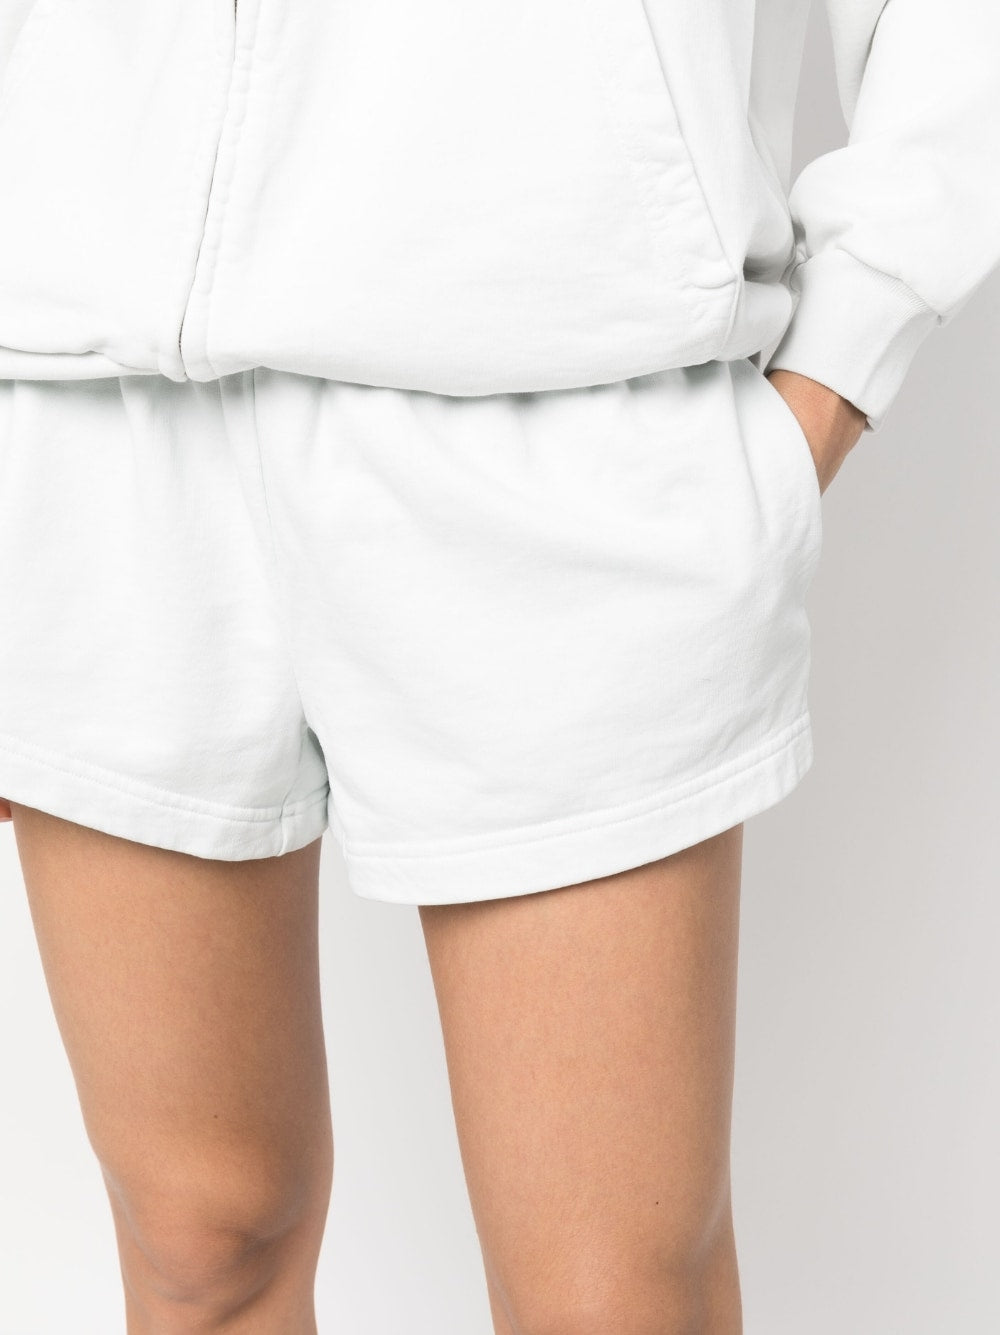 Balenciaga Shorts White